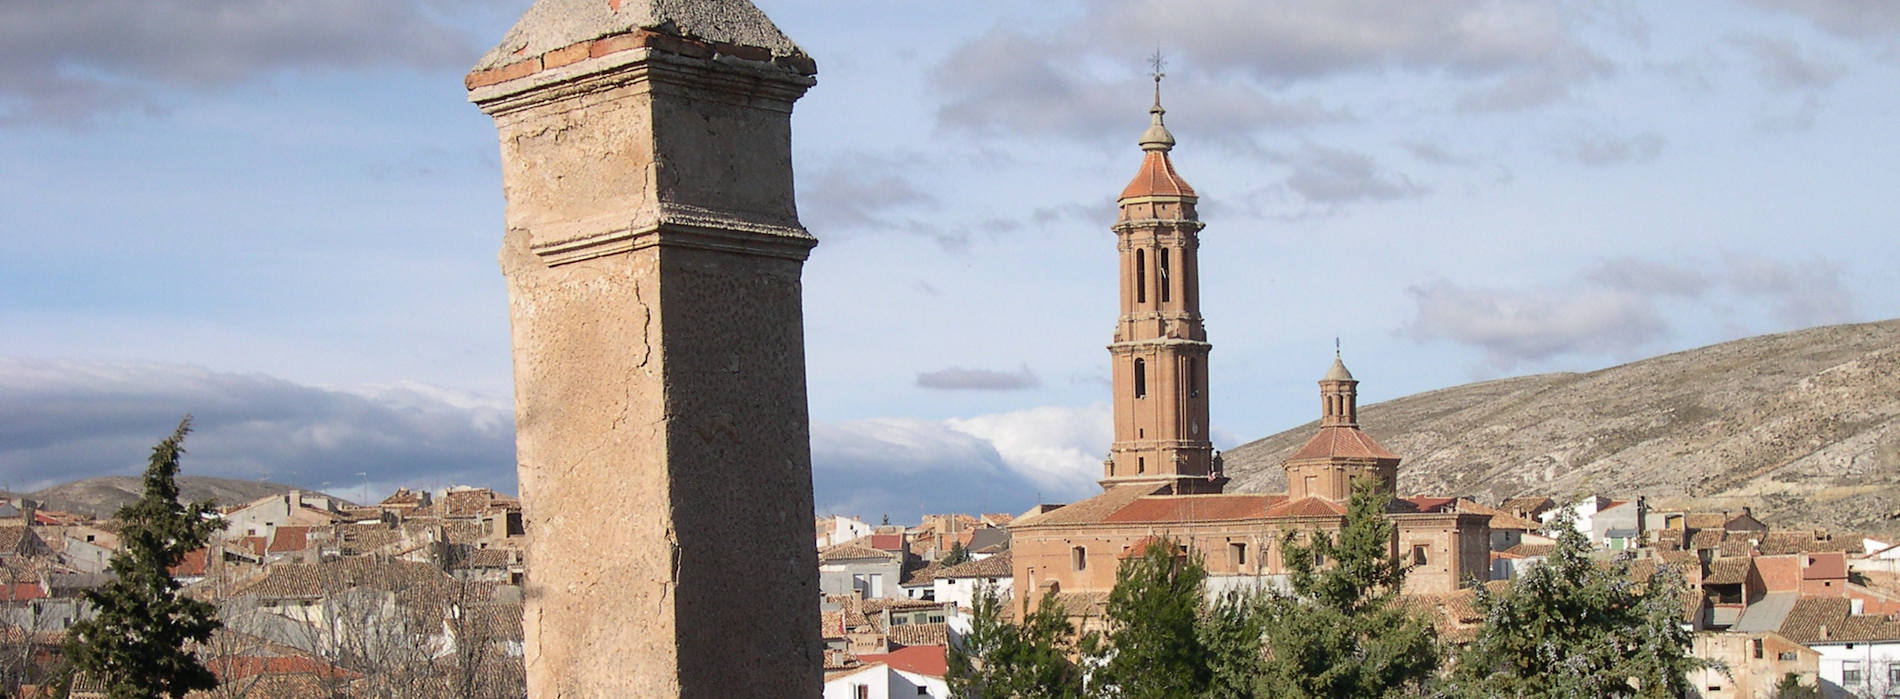 Blesa (Teruel)